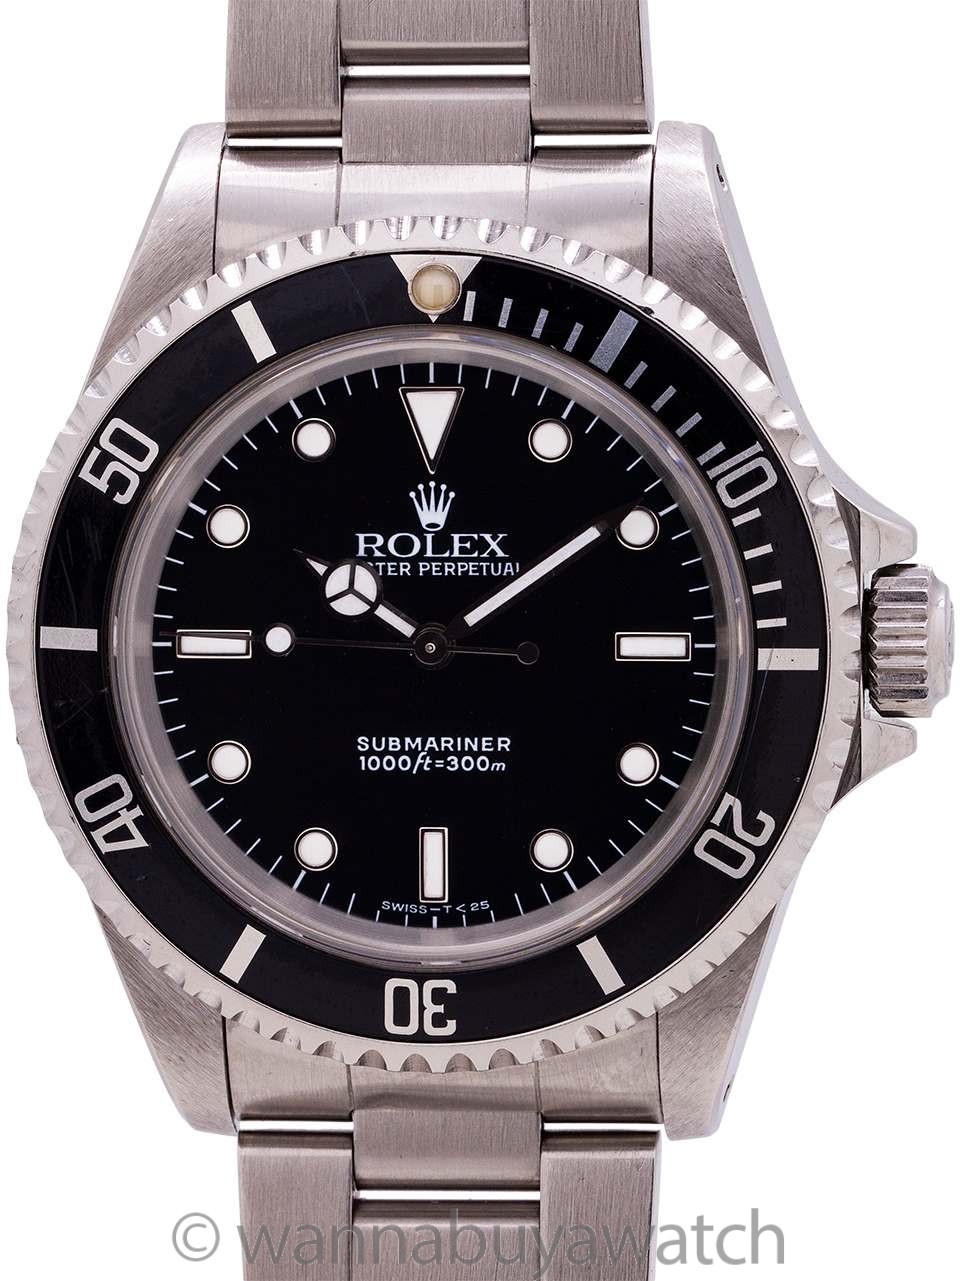 1993 rolex submariner